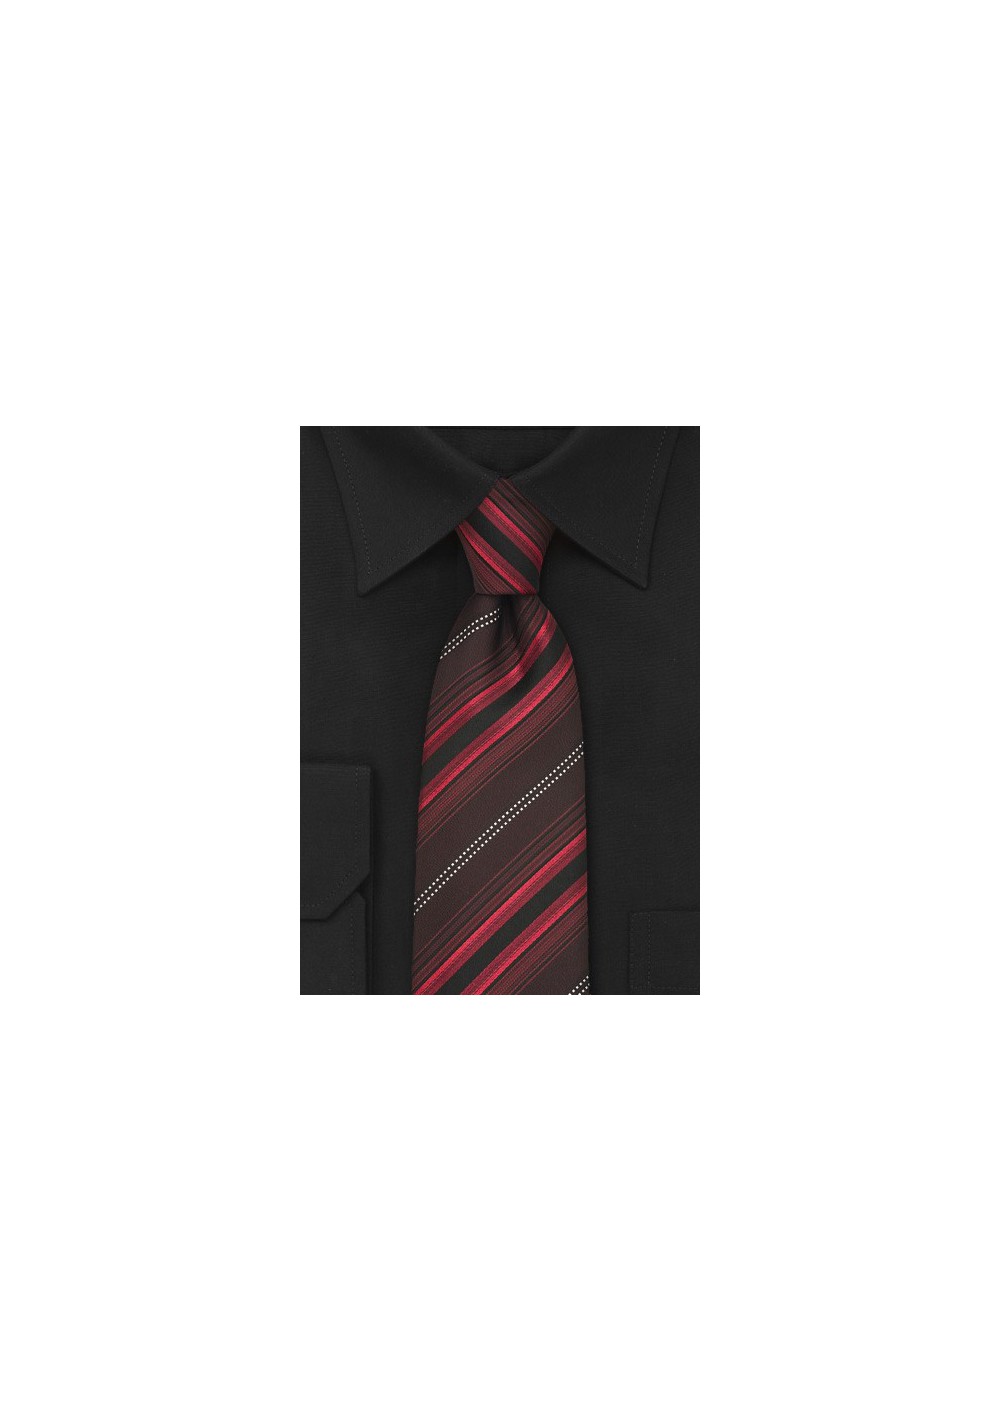 Modern Maroon-Red Striped Necktie